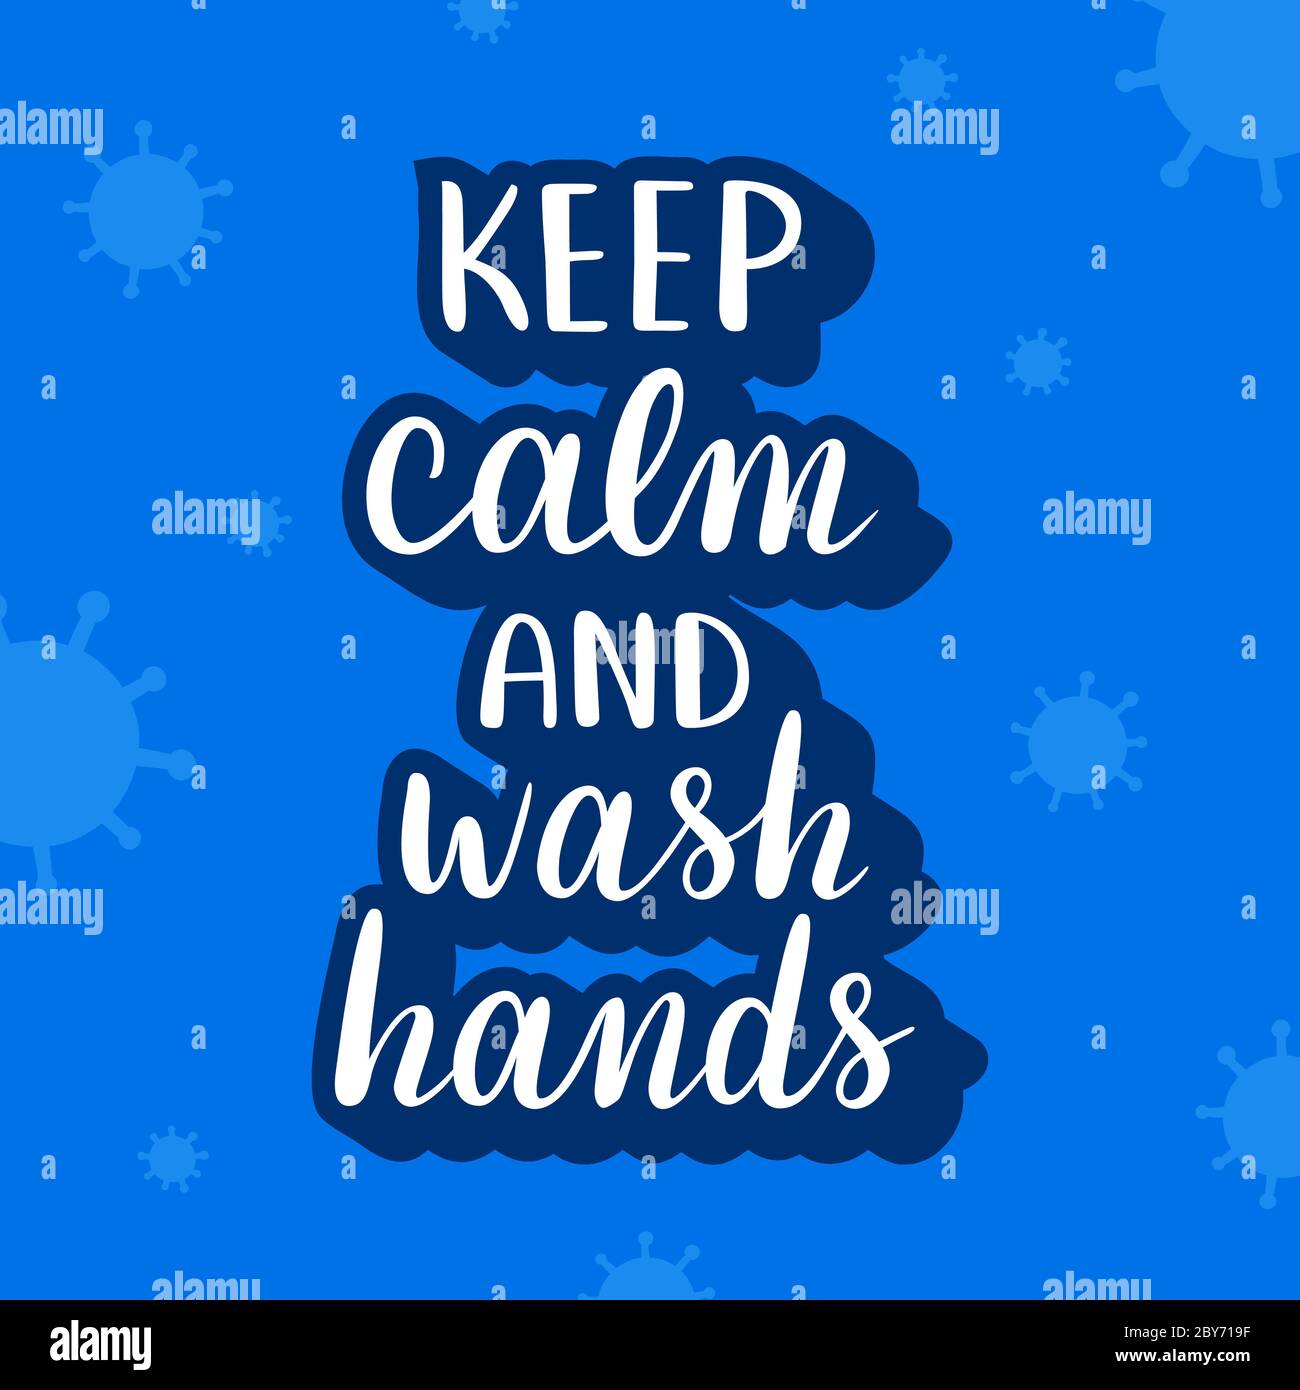 Halten Sie ruhig und waschen Hände Schriftzug Banner mit Virus Doodles, Motivationszitat für Coronavirus Epidemie, Spaß Slogan zur Prävention von covid-19 Stock Vektor